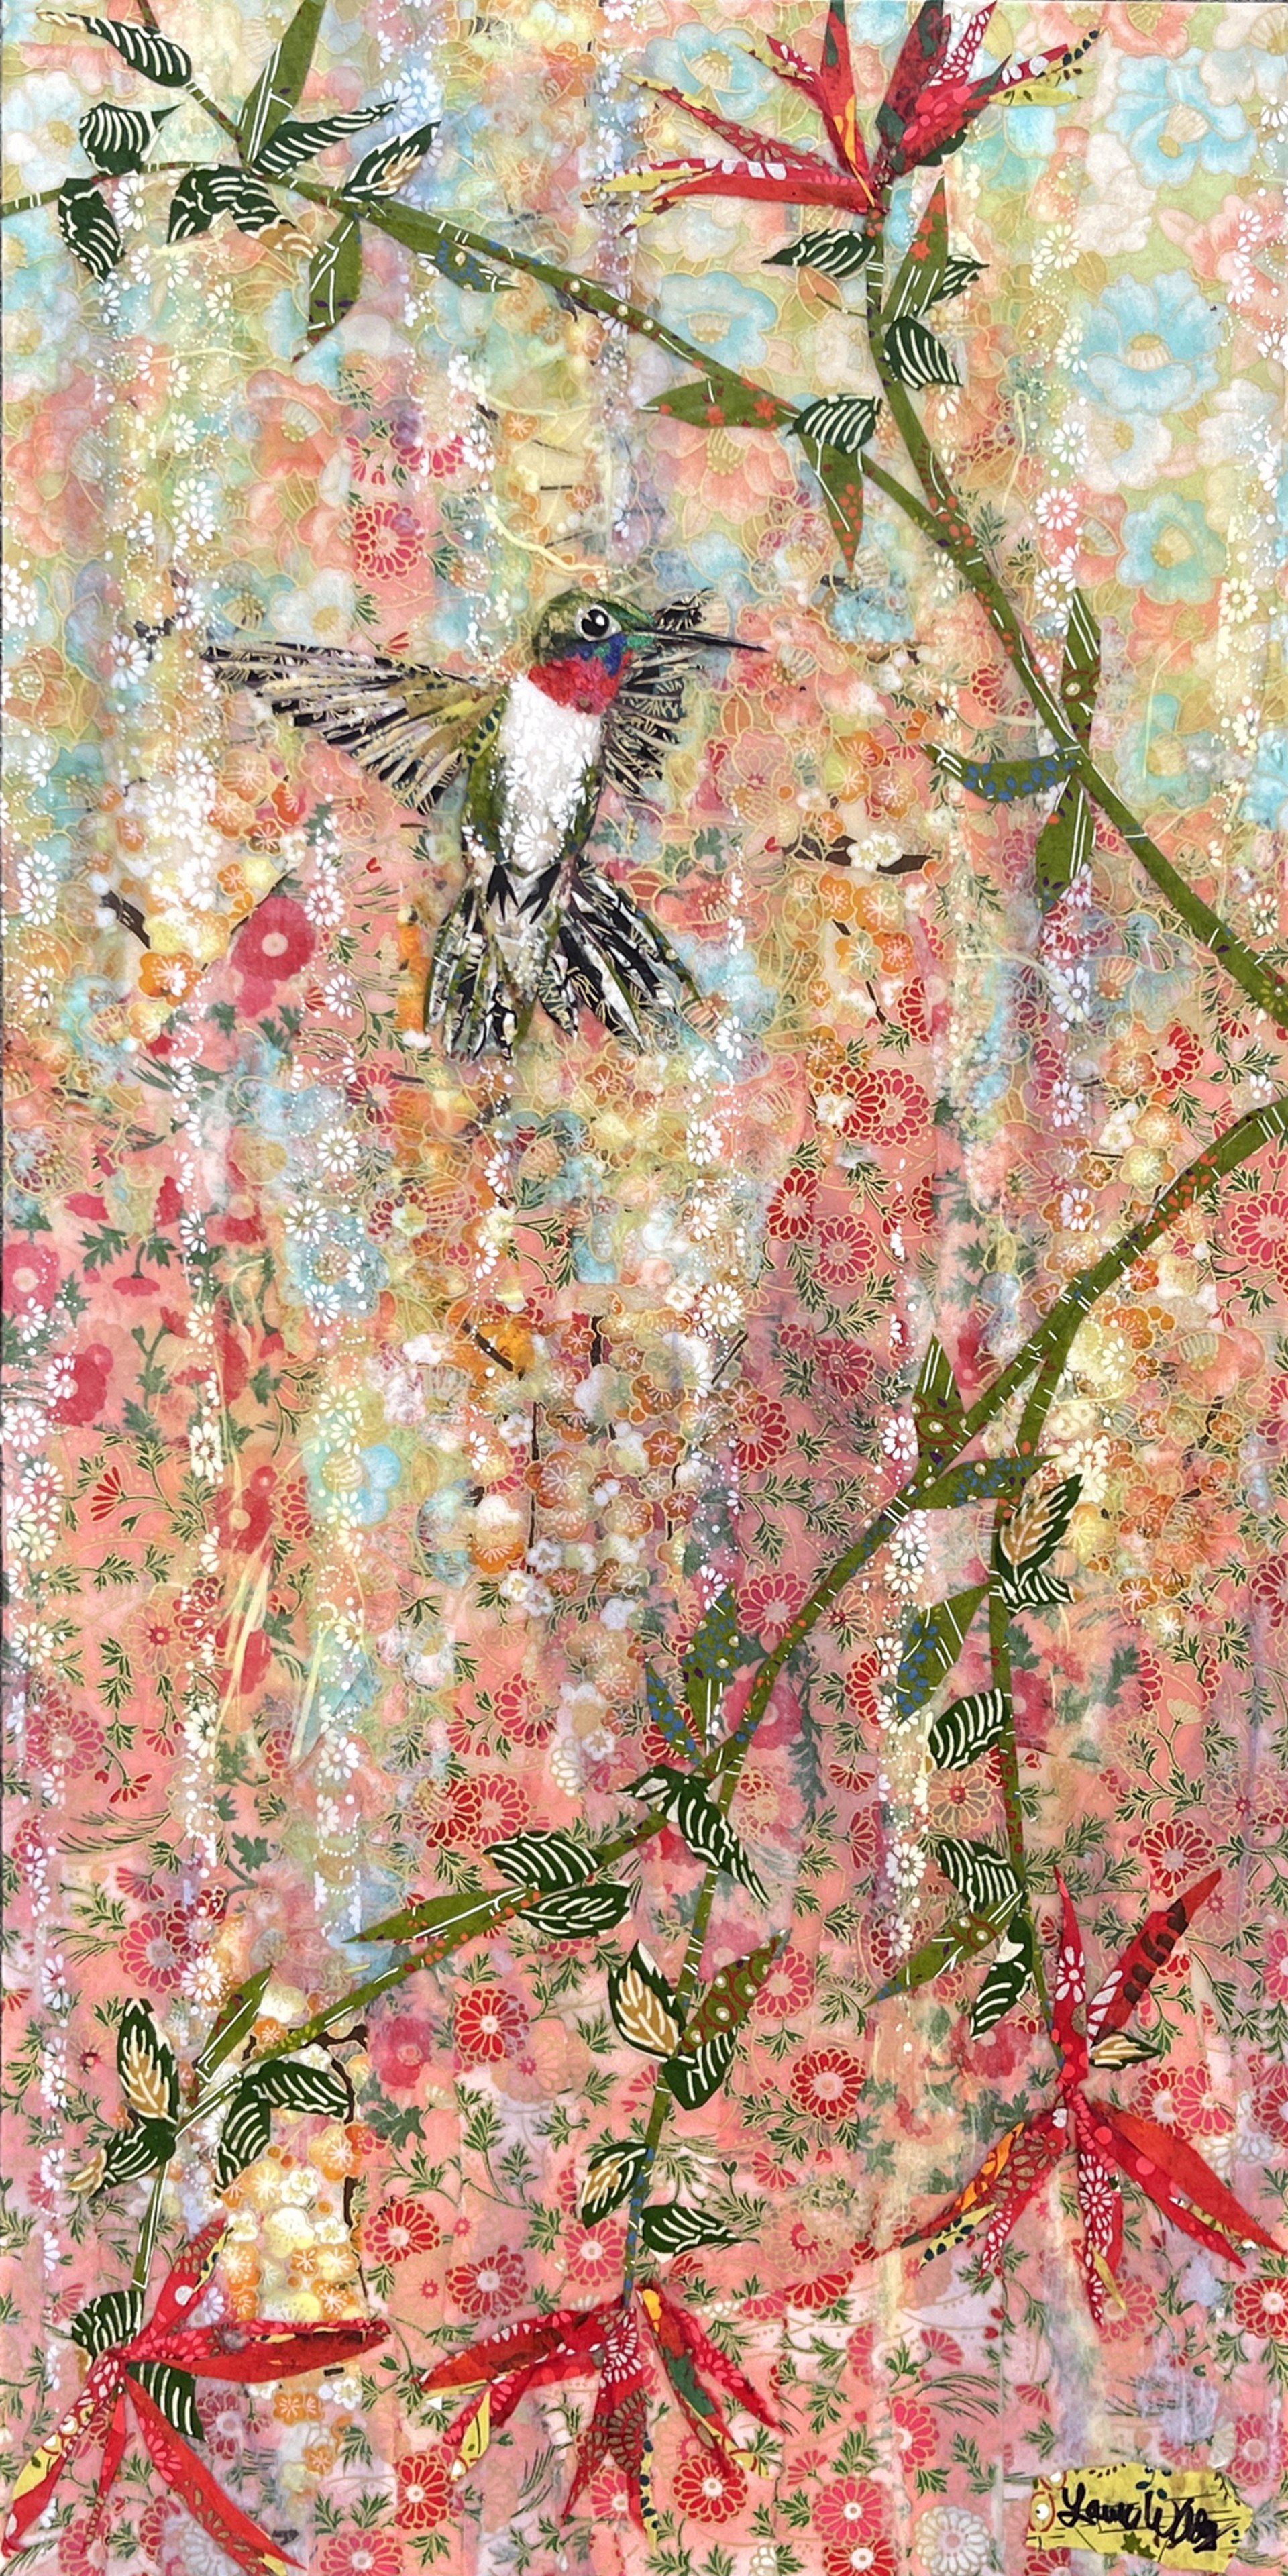 Hovering Hummingbird- SOLD! by Laura Adams